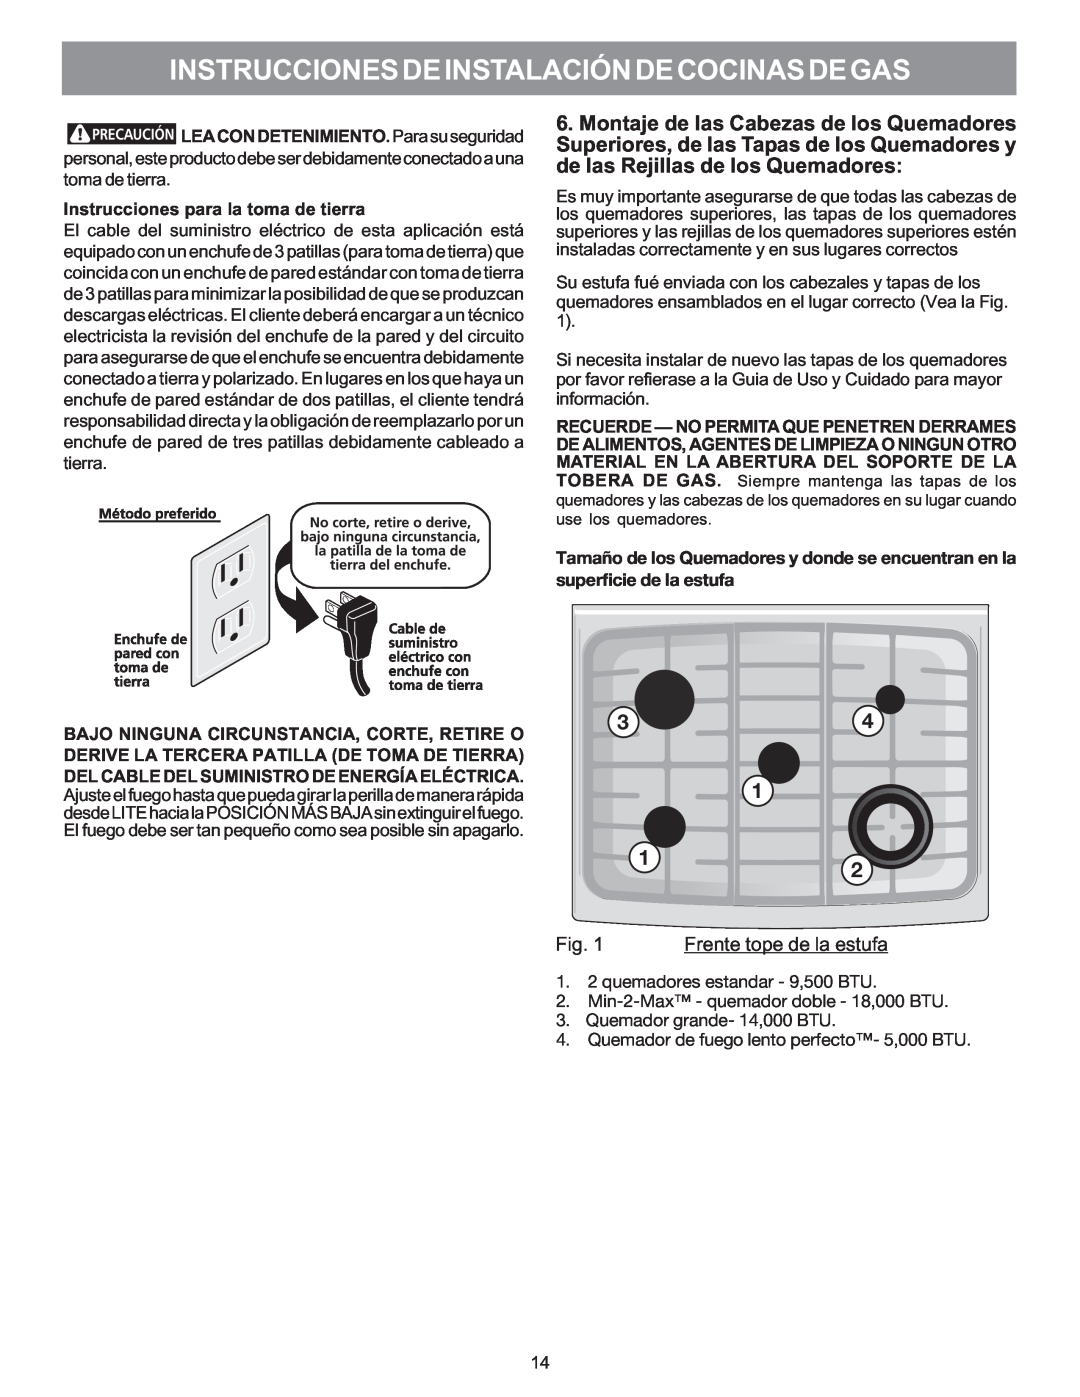 Electrolux 316469104 installation instructions Frente tope de la estufa, Instrucciones De Instalación De Cocinas De Gas 